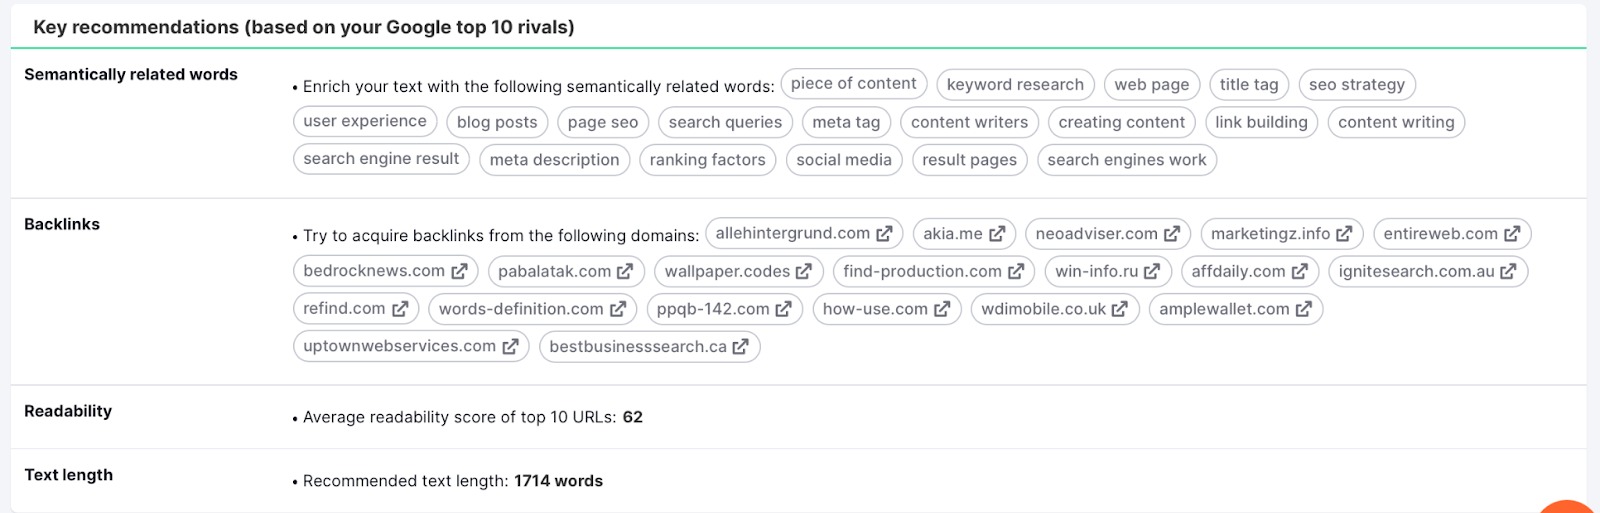 Ferramenta SEO Content Template. As principais recomendações baseadas nos 10 maiores concorrentes no Google para palavras semanticamente relacionadas, backlinks, legibilidade e tamanho do texto. 